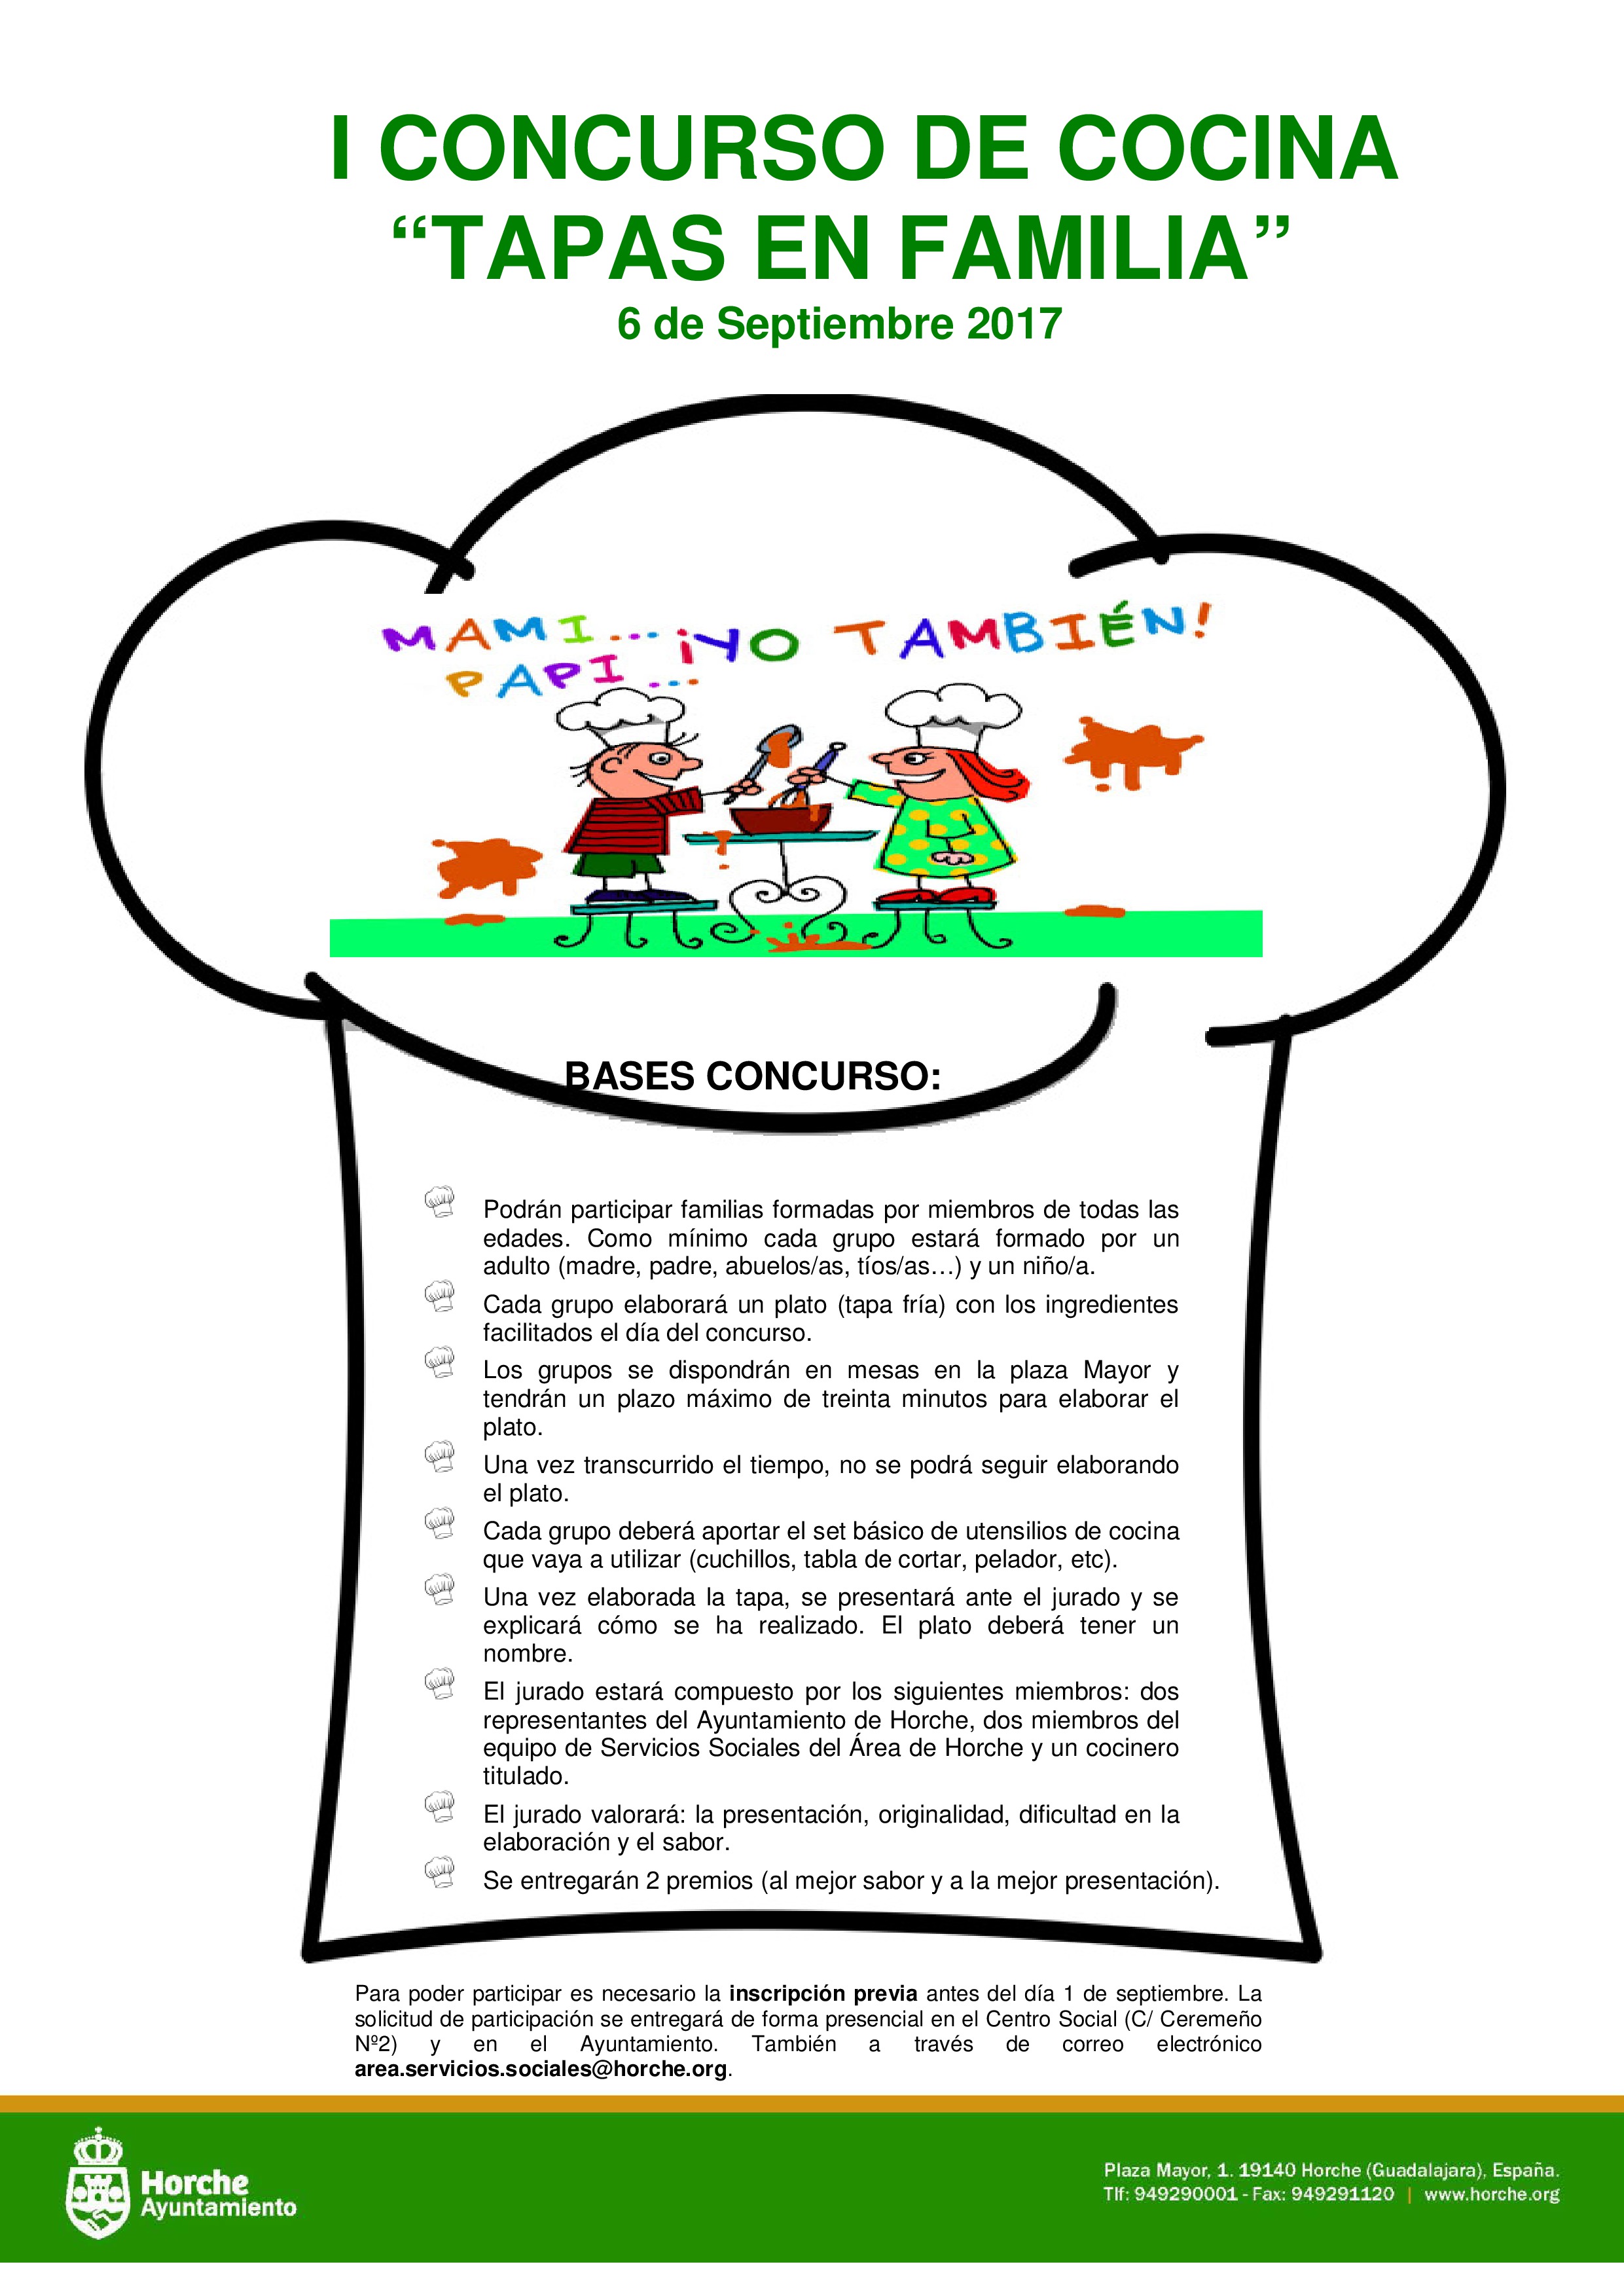 I_CONCURSO_DE_COCINA-page-0.jpg